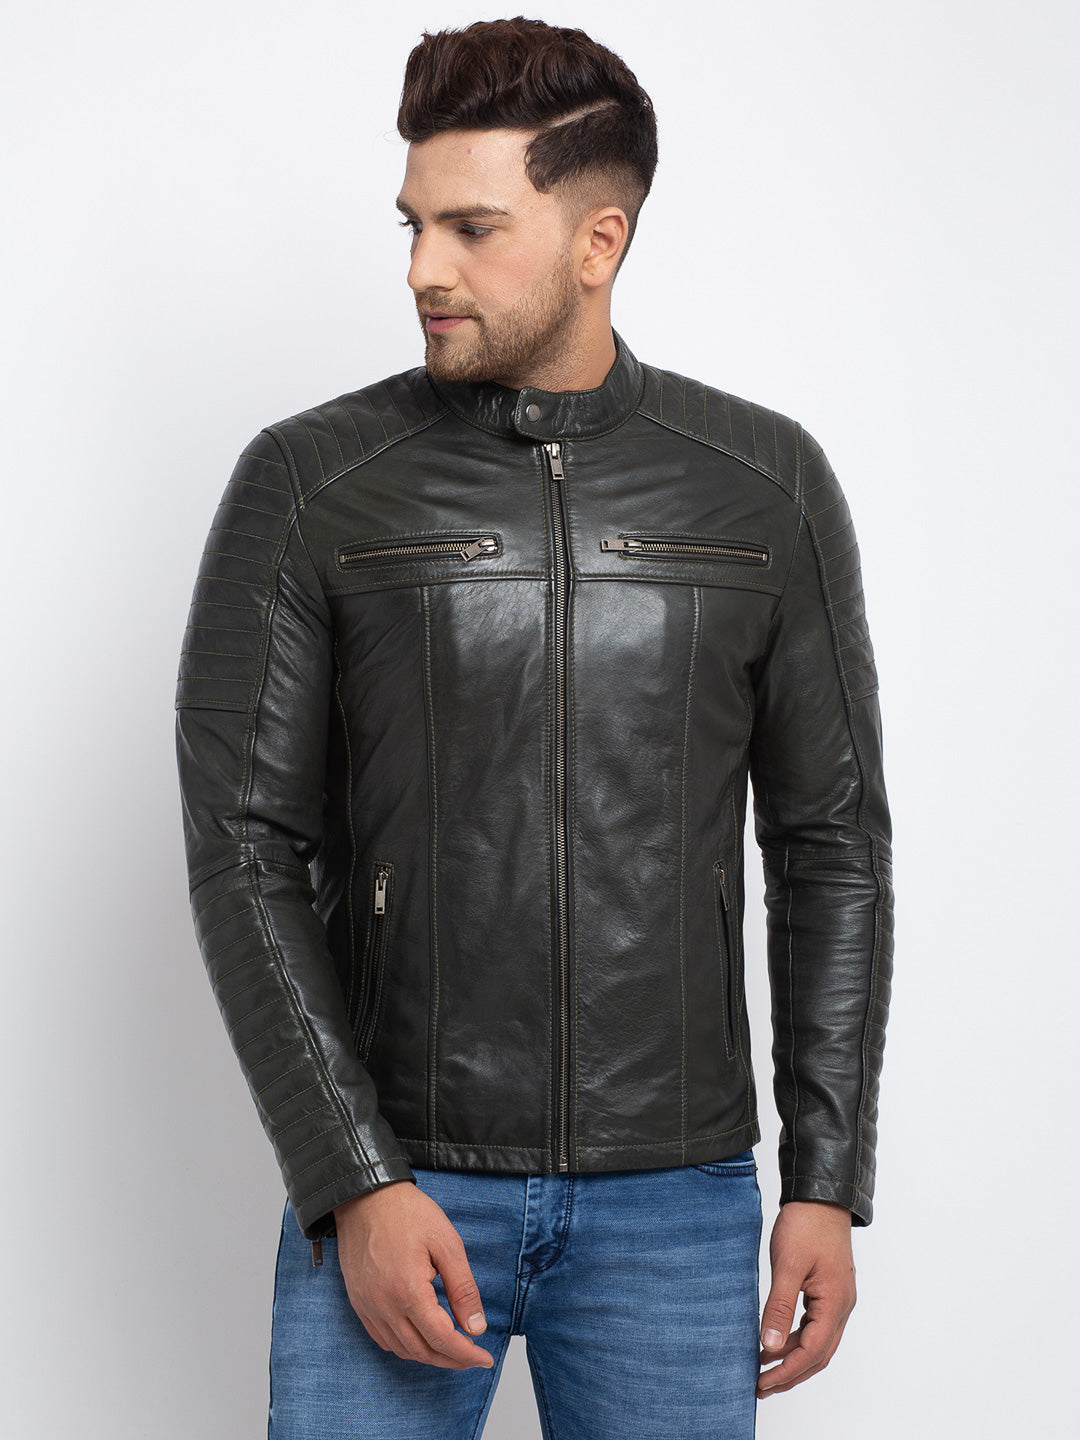 Teakwood Leathers Men's 100% Genuine Olive Leather Jacket